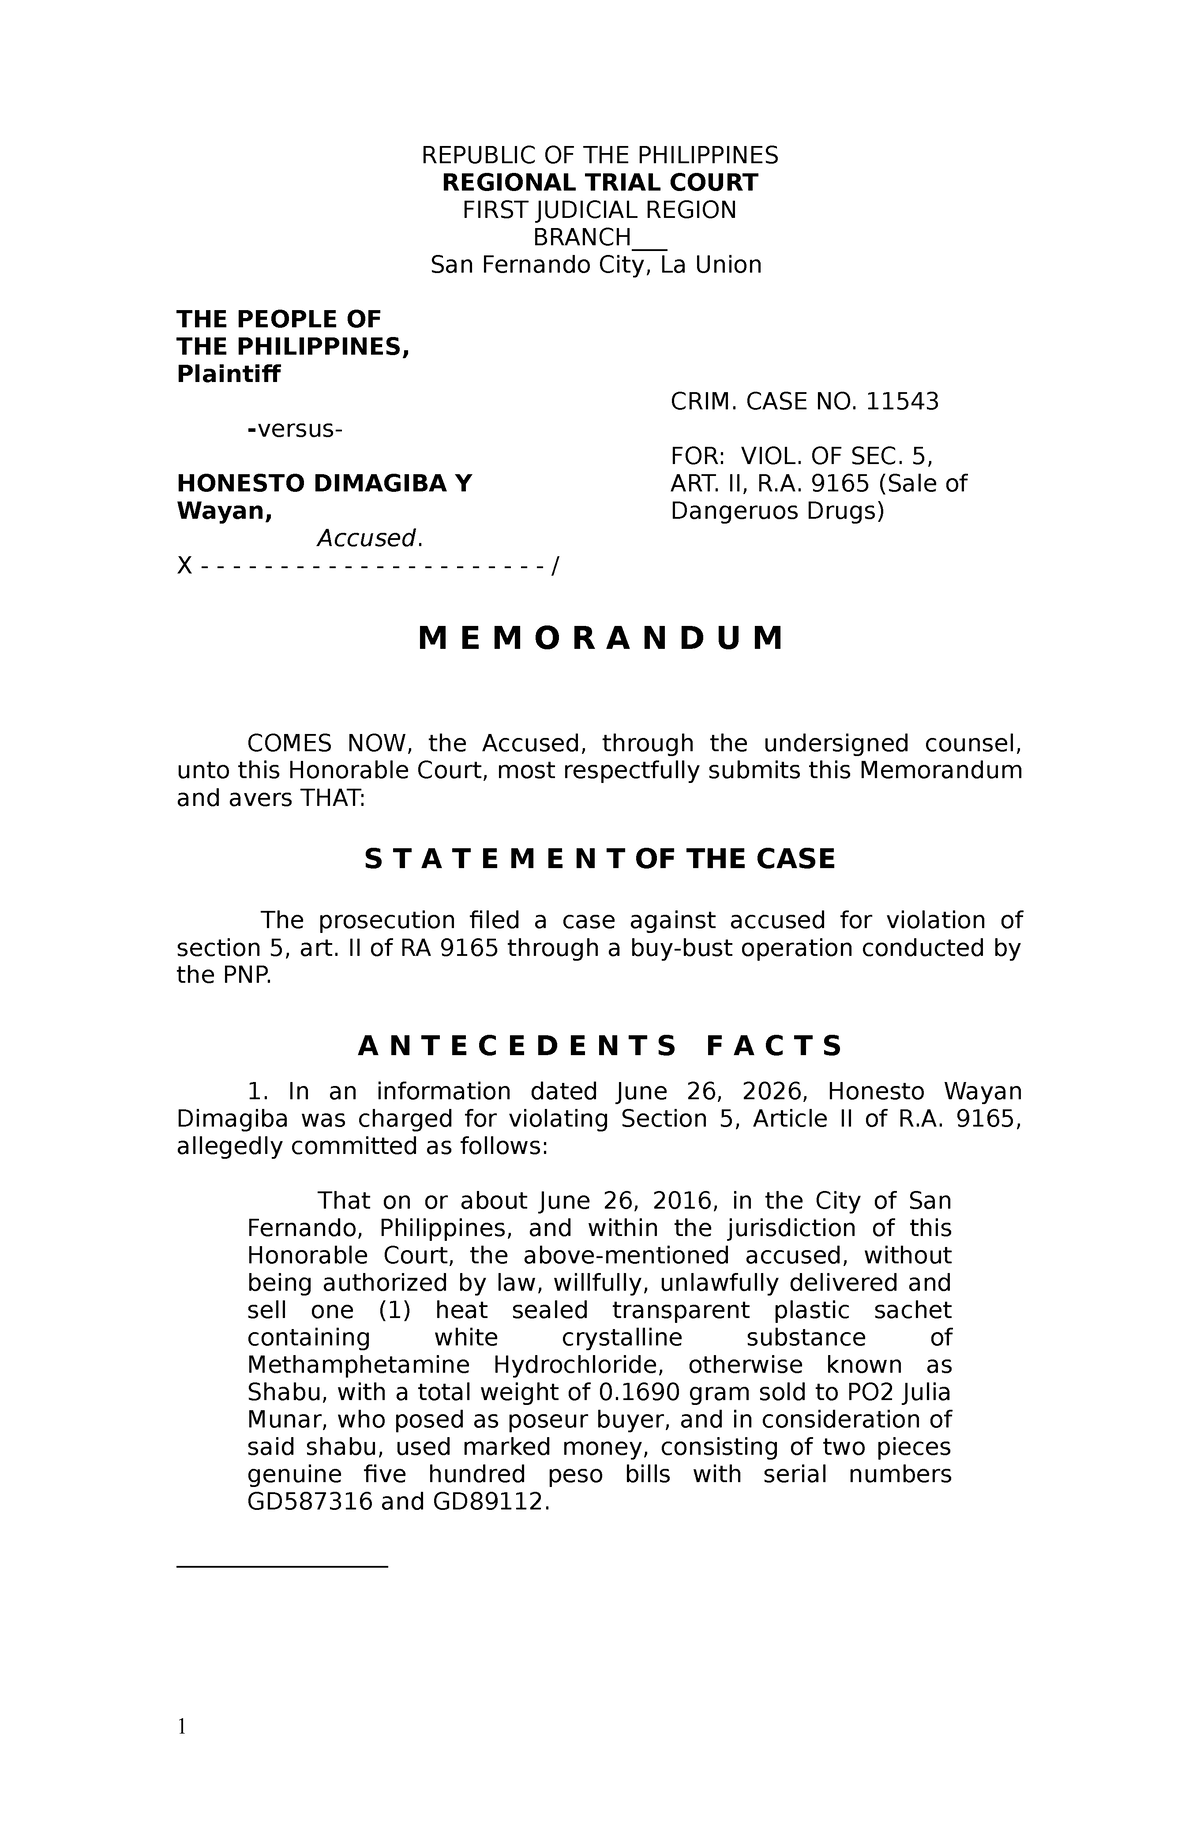 Legal Memorandum Sample REPUBLIC OF THE PHILIPPINES REGIONAL TRIAL